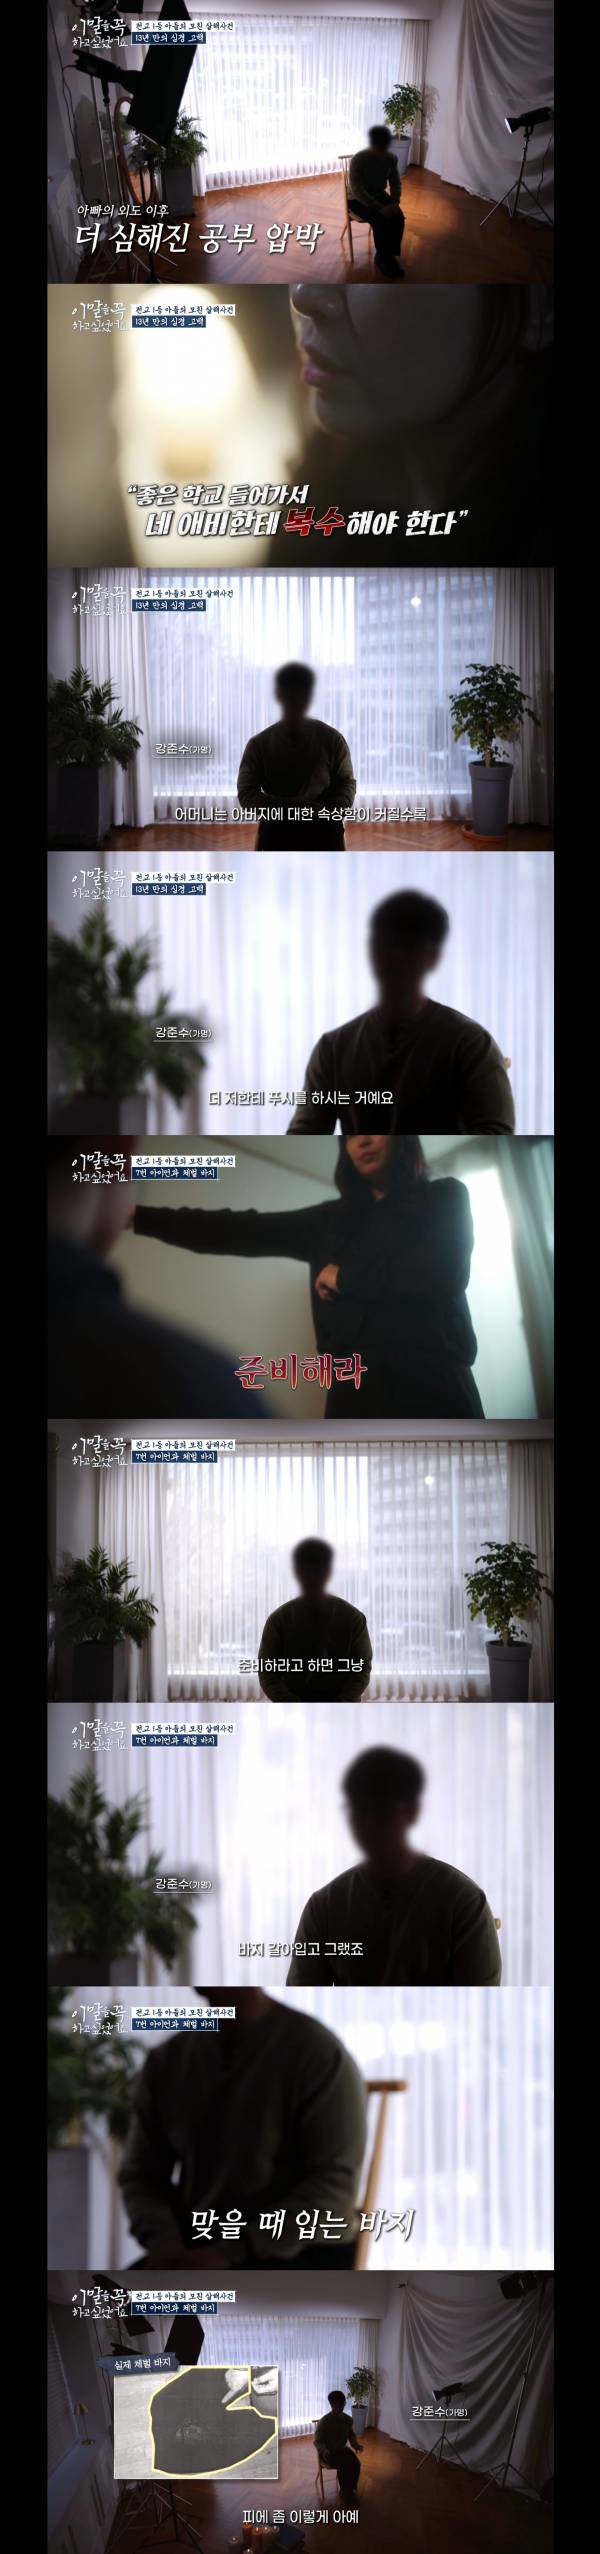 난리났다던 tvN 새 프로그램 살인 가해자 인터뷰 캡쳐.jpg